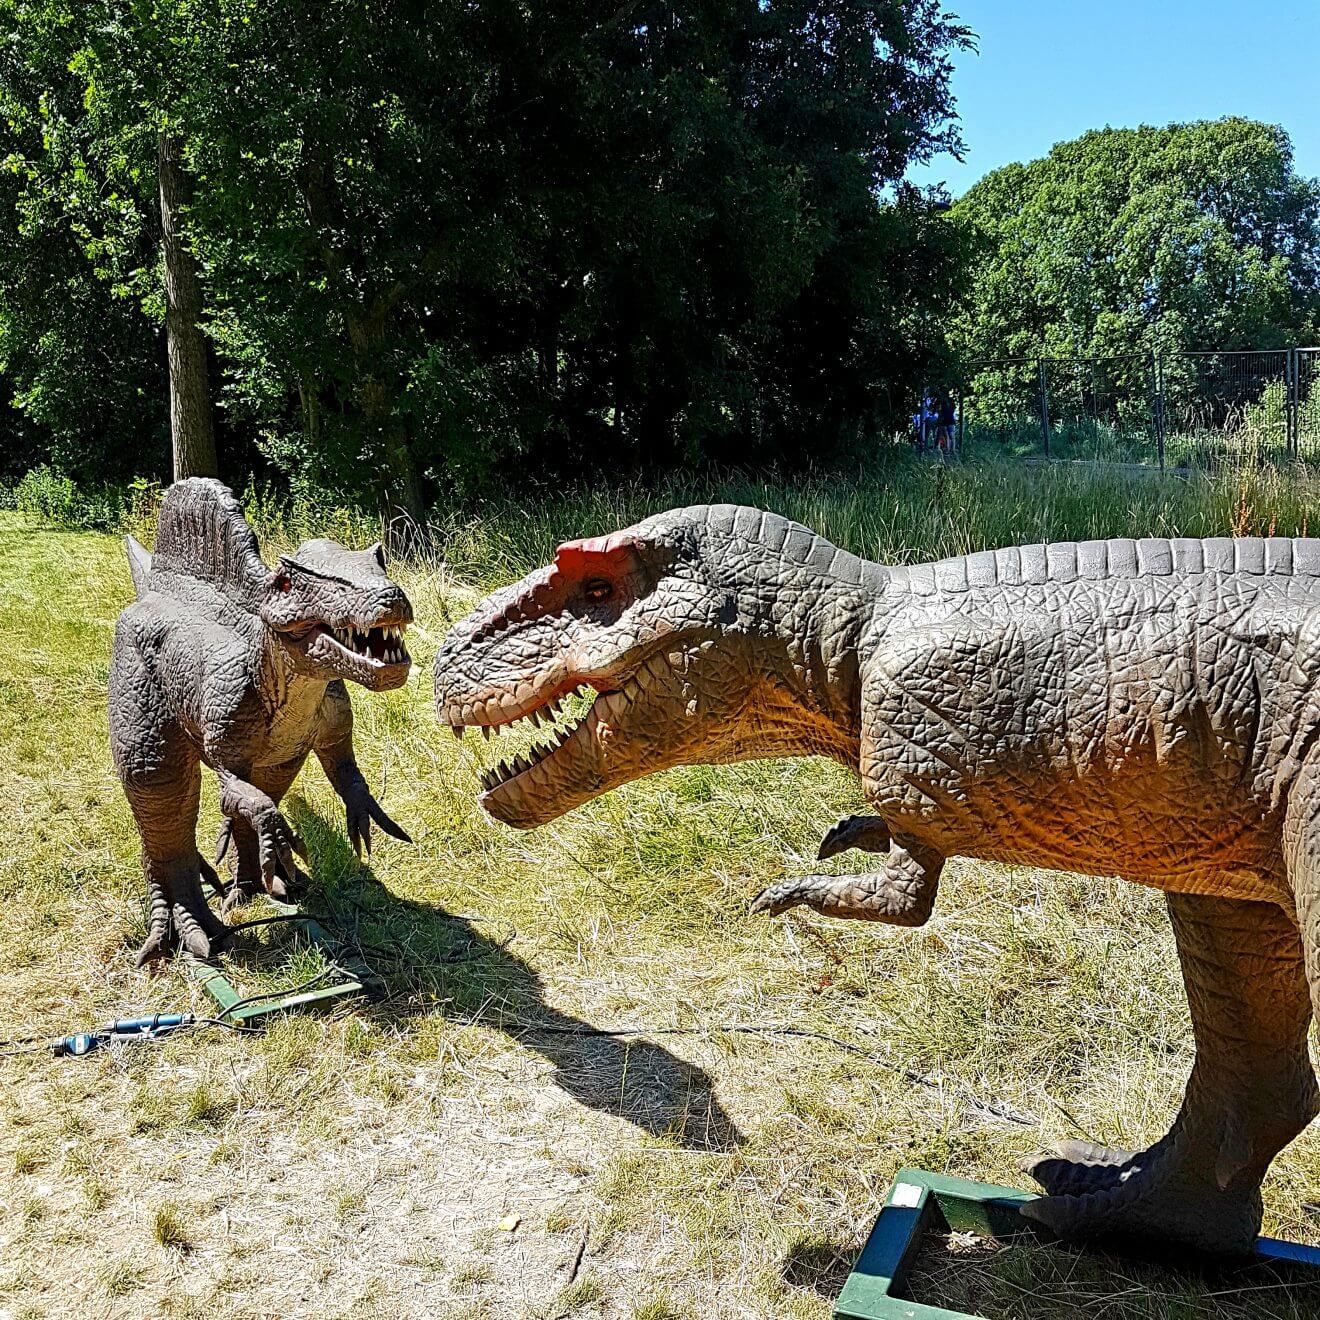 Uitje met kids: dino's kijken bij Jurassic Kingdom en daarna naar de speeltuin